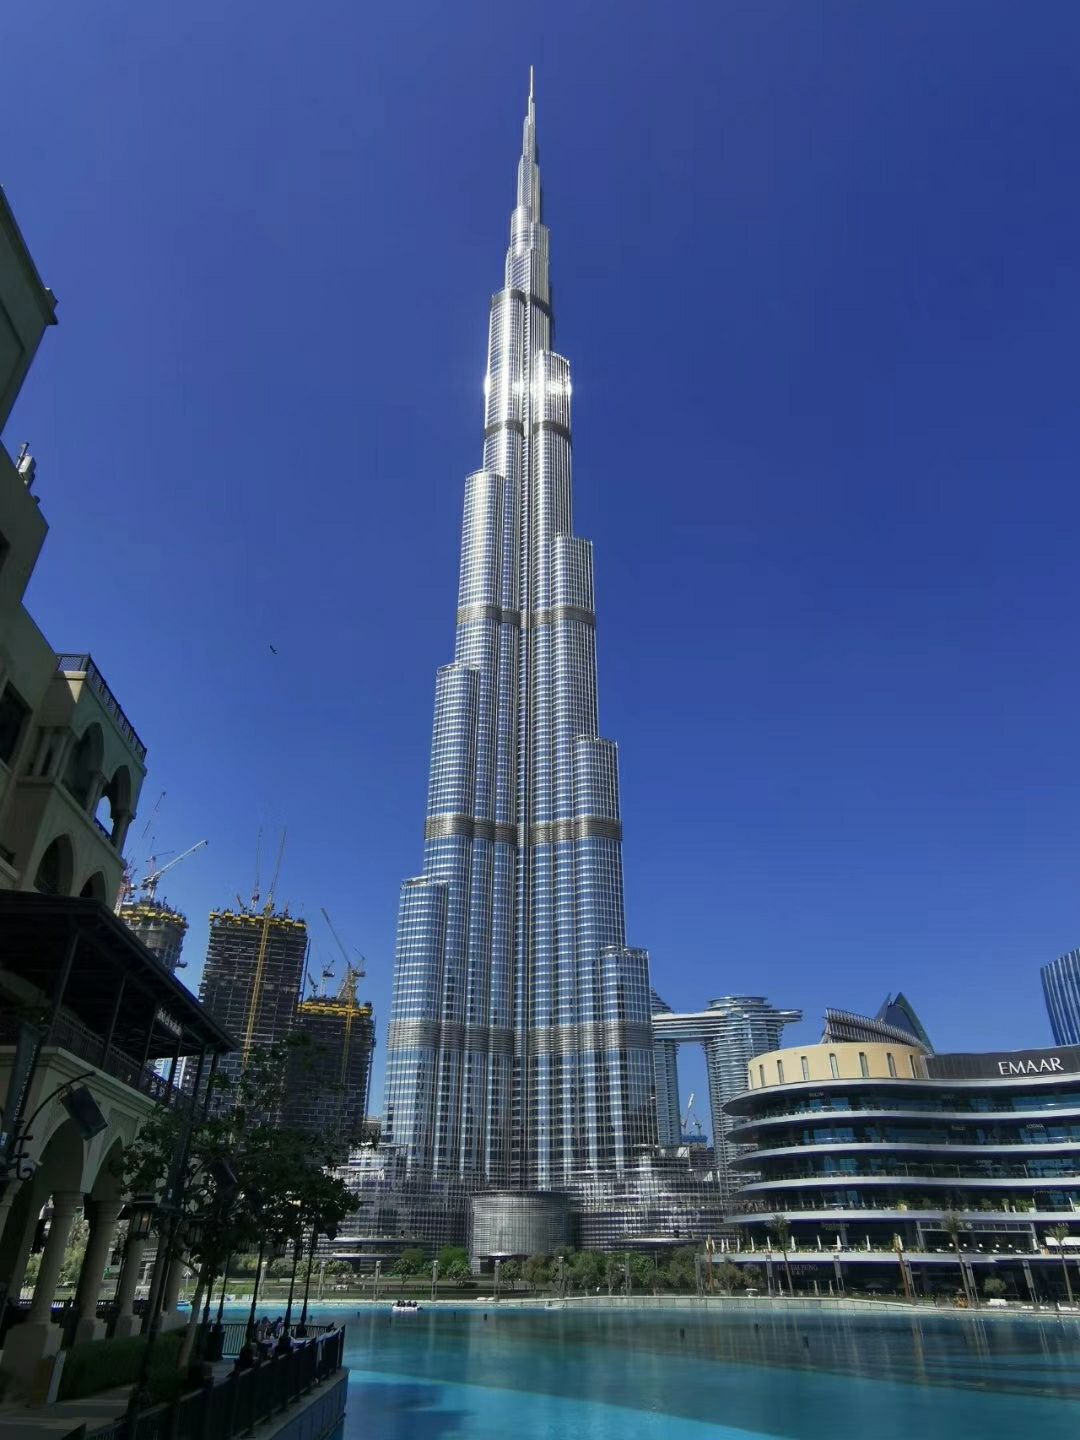 世界上最豪华七星级酒店迪拜塔高清晰壁纸_风景_太平洋科技